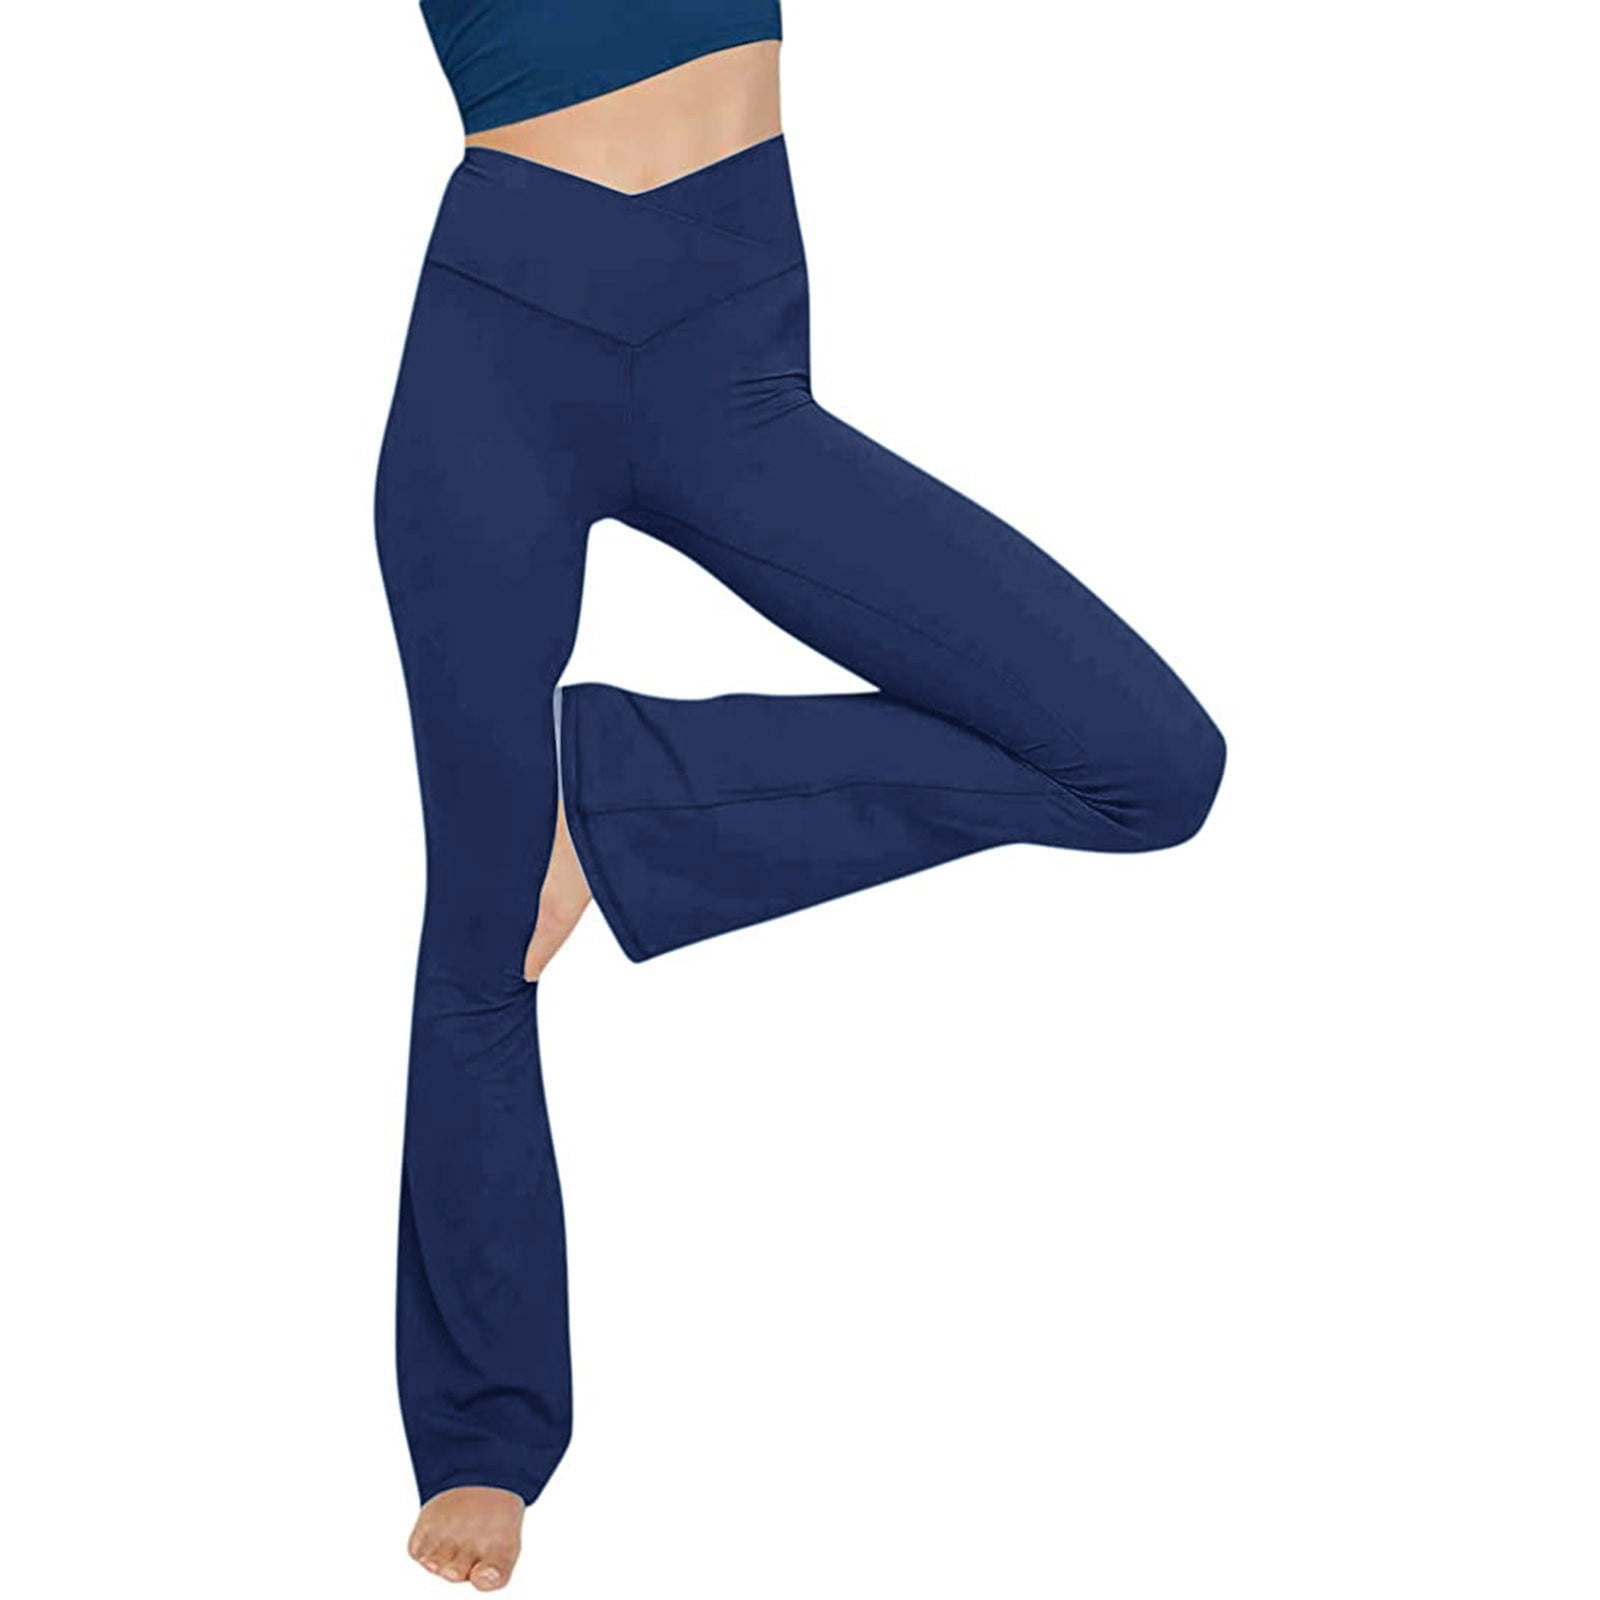 High Waist Mini Flared Leggings for Women- Flare Yoga Pants for